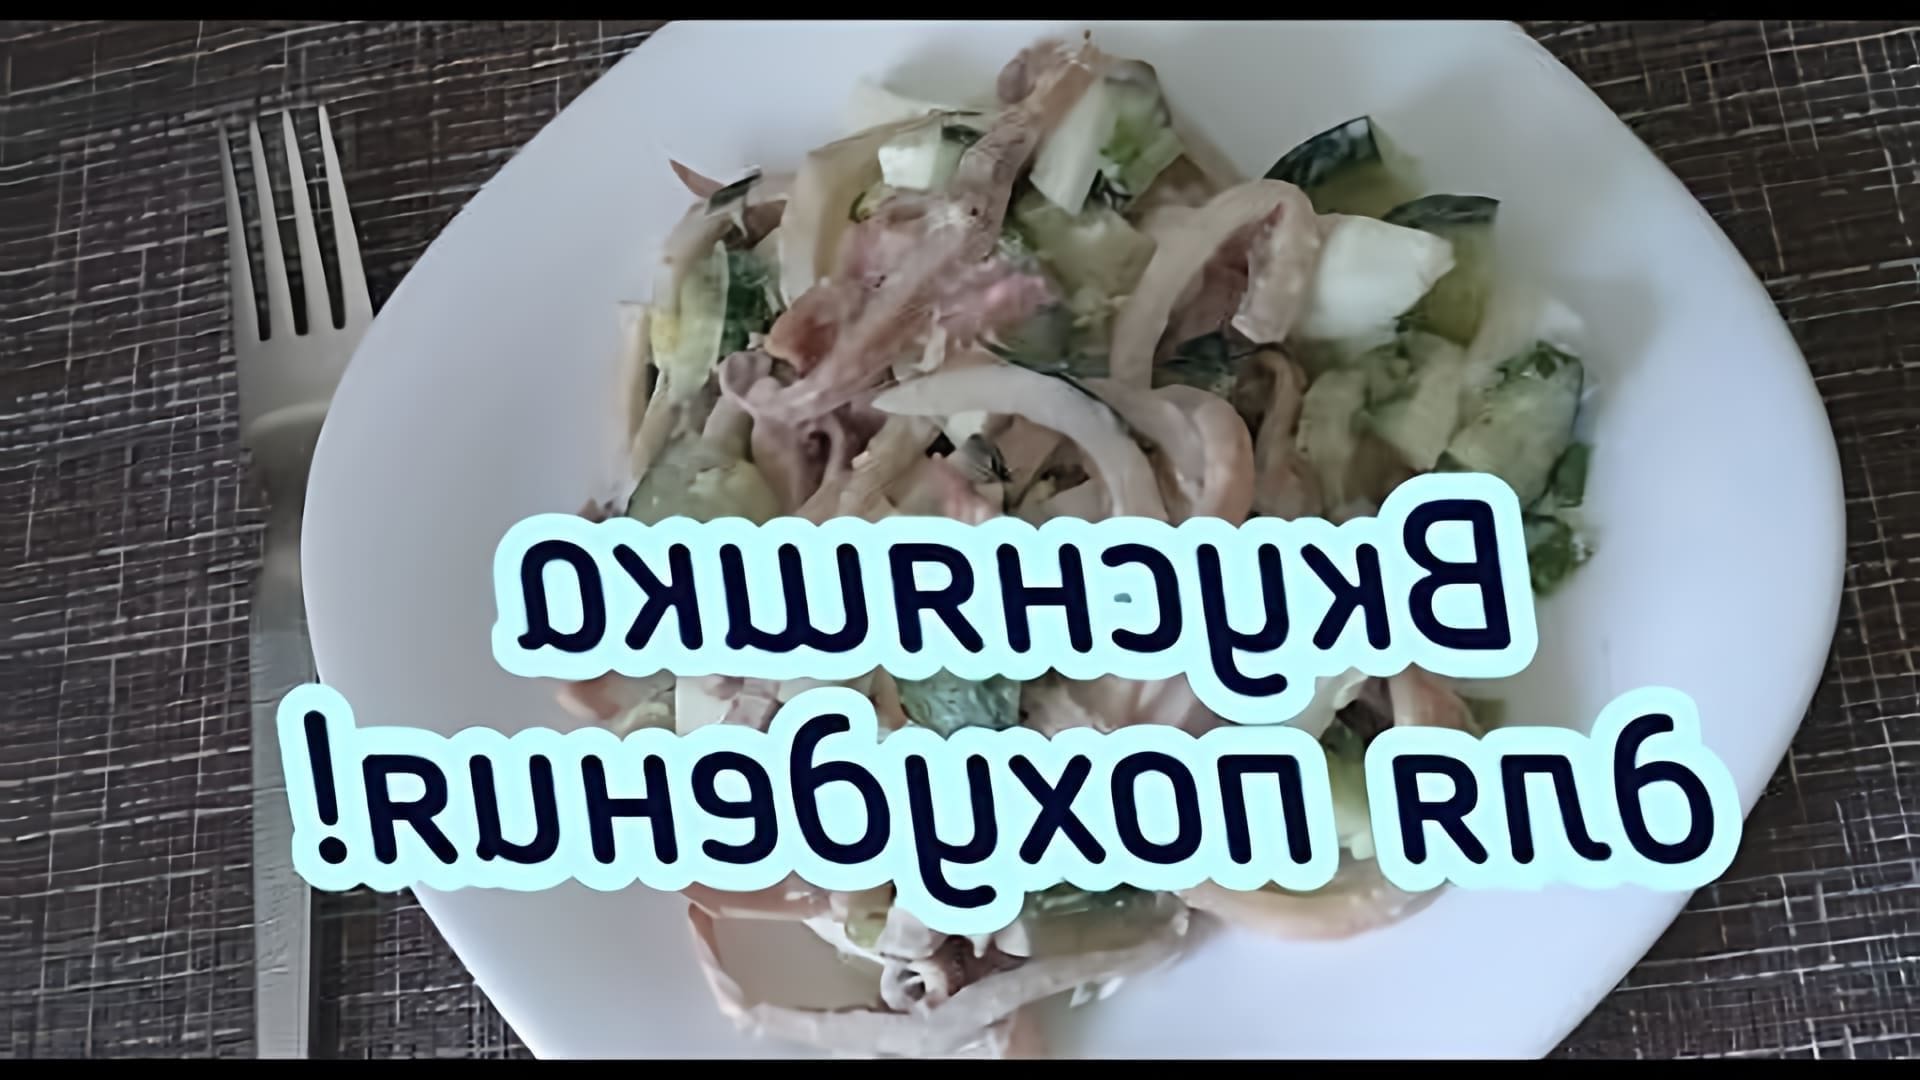 В этом видео демонстрируется рецепт салата с отварным кальмаром, который содержит большое количество белка и может быть употреблен как на ужин, так и на перекус